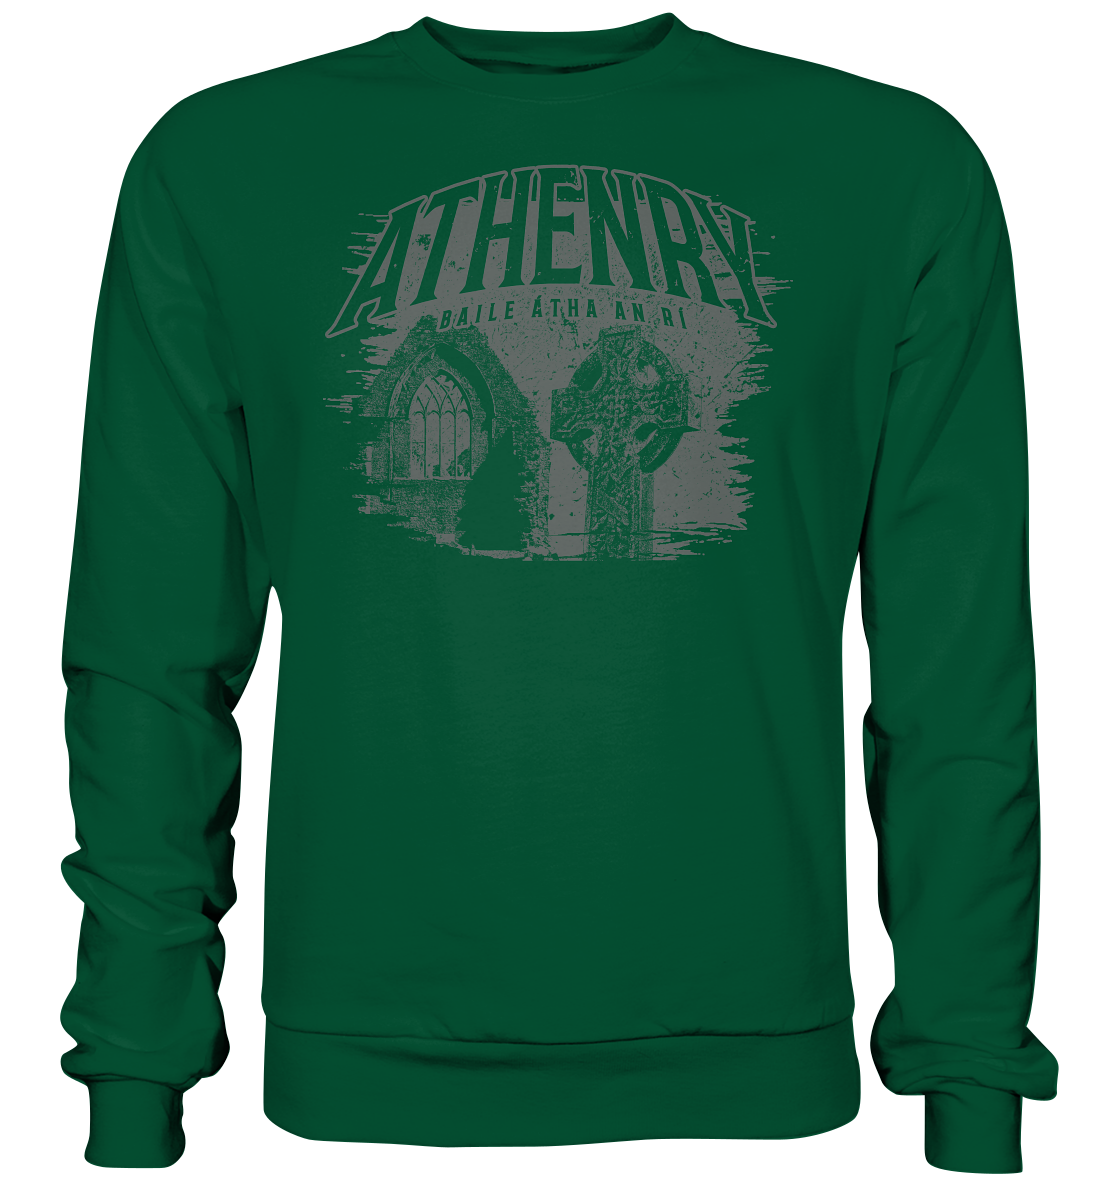 Athenry "Baile Átha An Rí" - Basic Sweatshirt